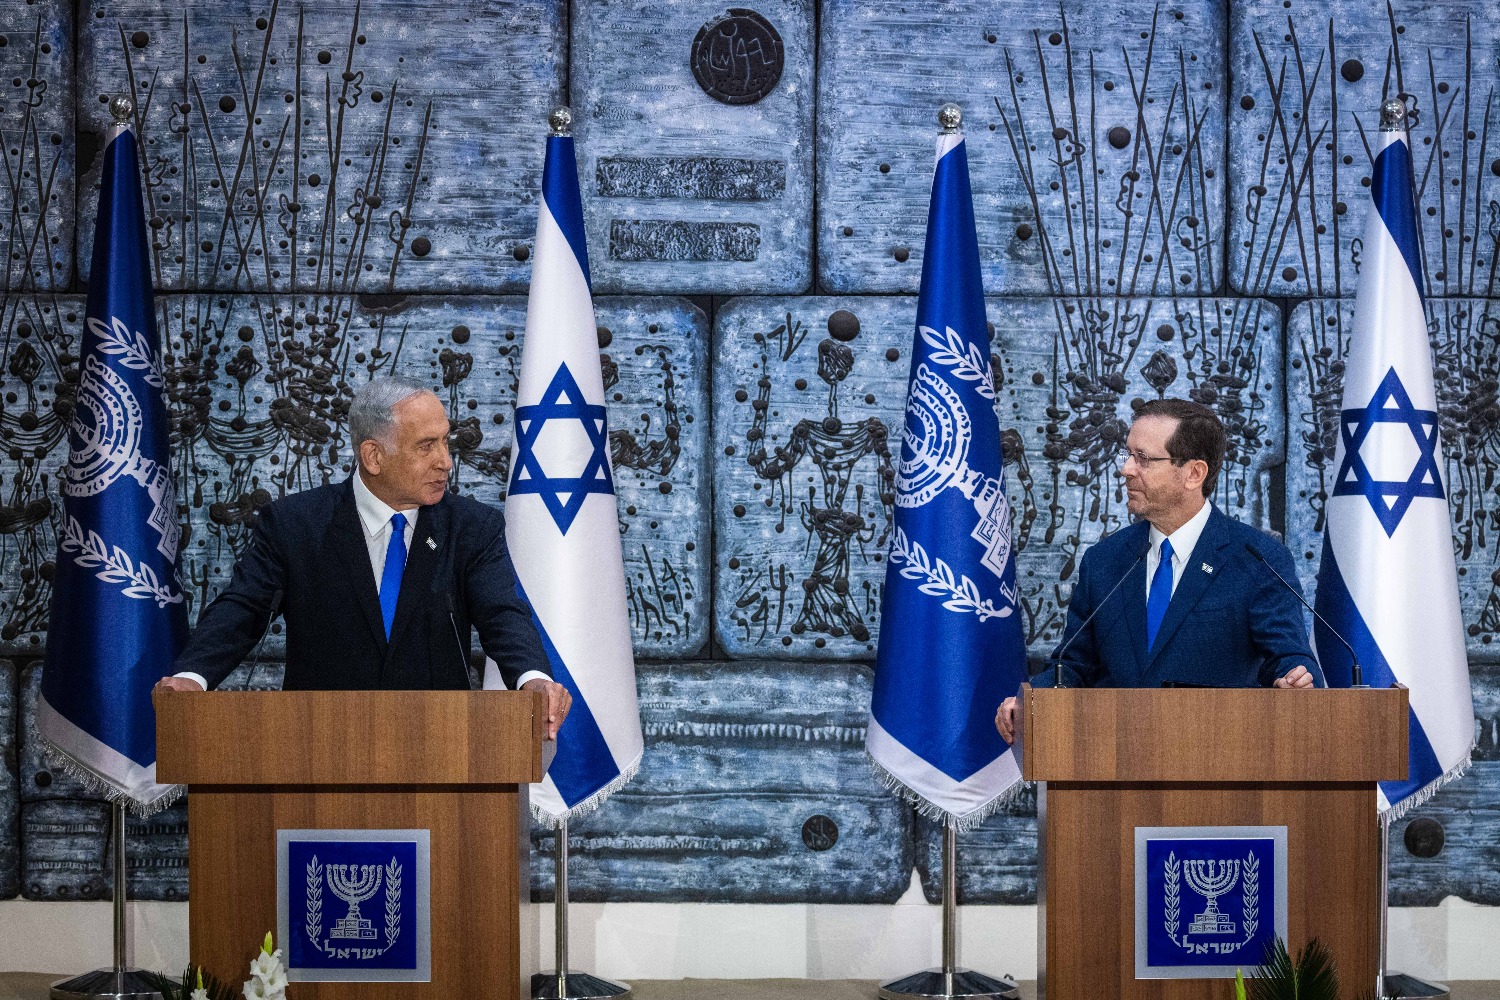 Герцог и Нетаньяху выступили на горе Герцля. Нетаньяху грозил Ирану, Герцог успокаивал общественность